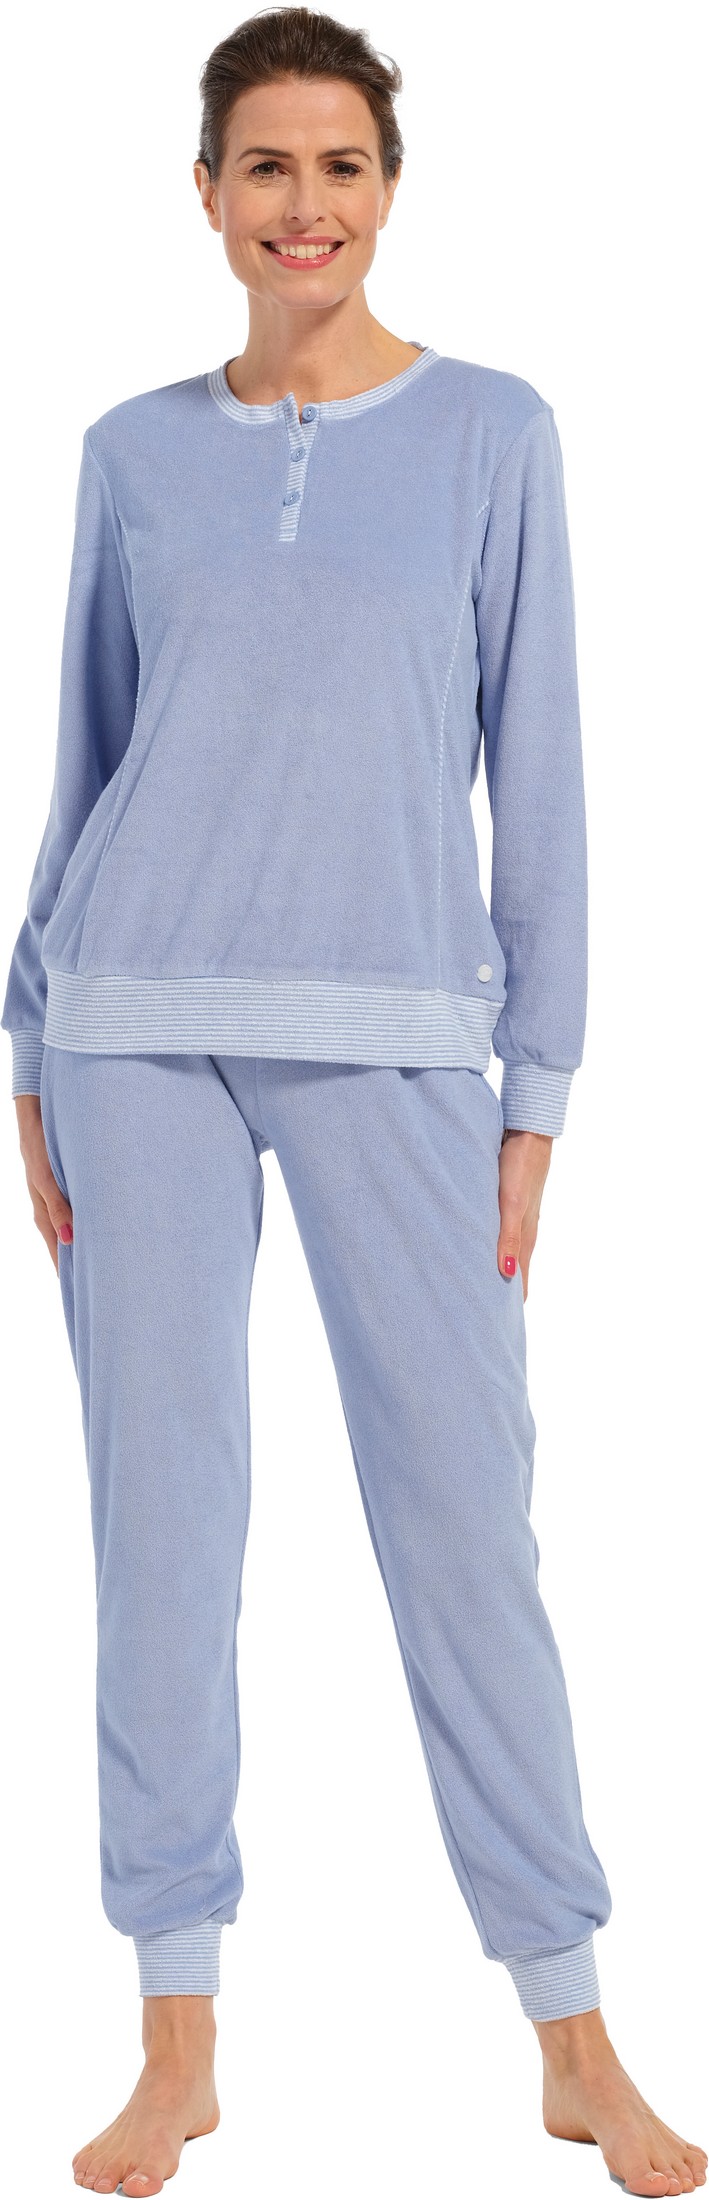 Pastunette dames badstof pyjama 20232-174-4 - Blauw - 36